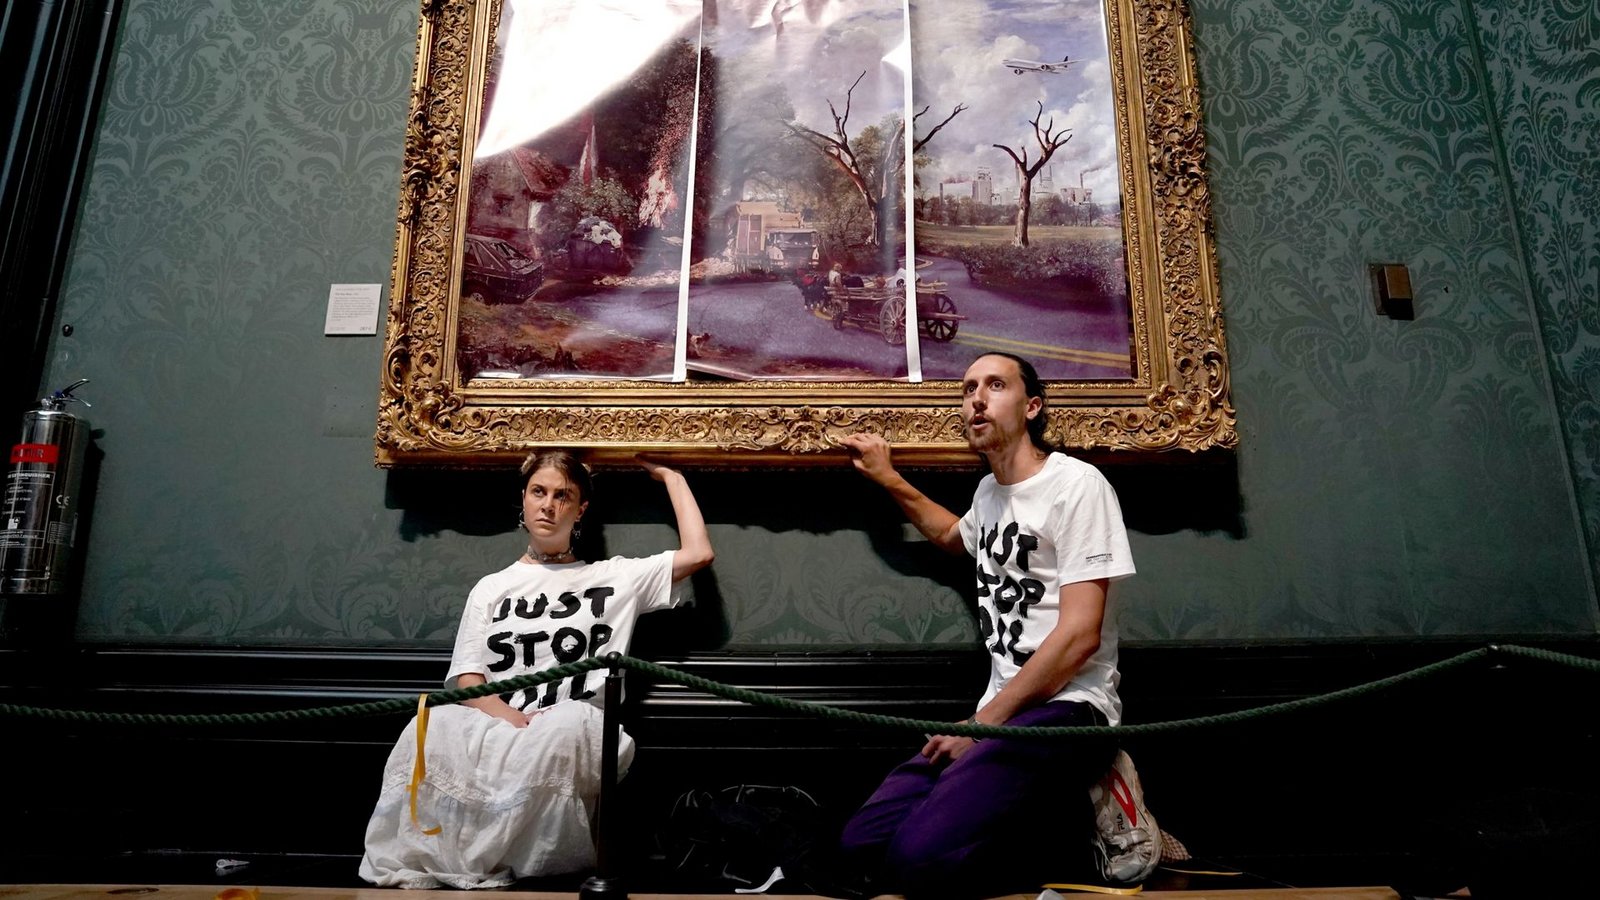 Klimaaktivisten der Organisation Just Stop Oil haben ihre Hände an den Rahmen des Gemäldes "The Hay Wain" von John Constable geklebt, das sie zunächst mit einer auf Poster gedruckten dystopischen Version des Bildes verkleidet hatten.Foto: Kirsty O'connor/PA Wire/dpa